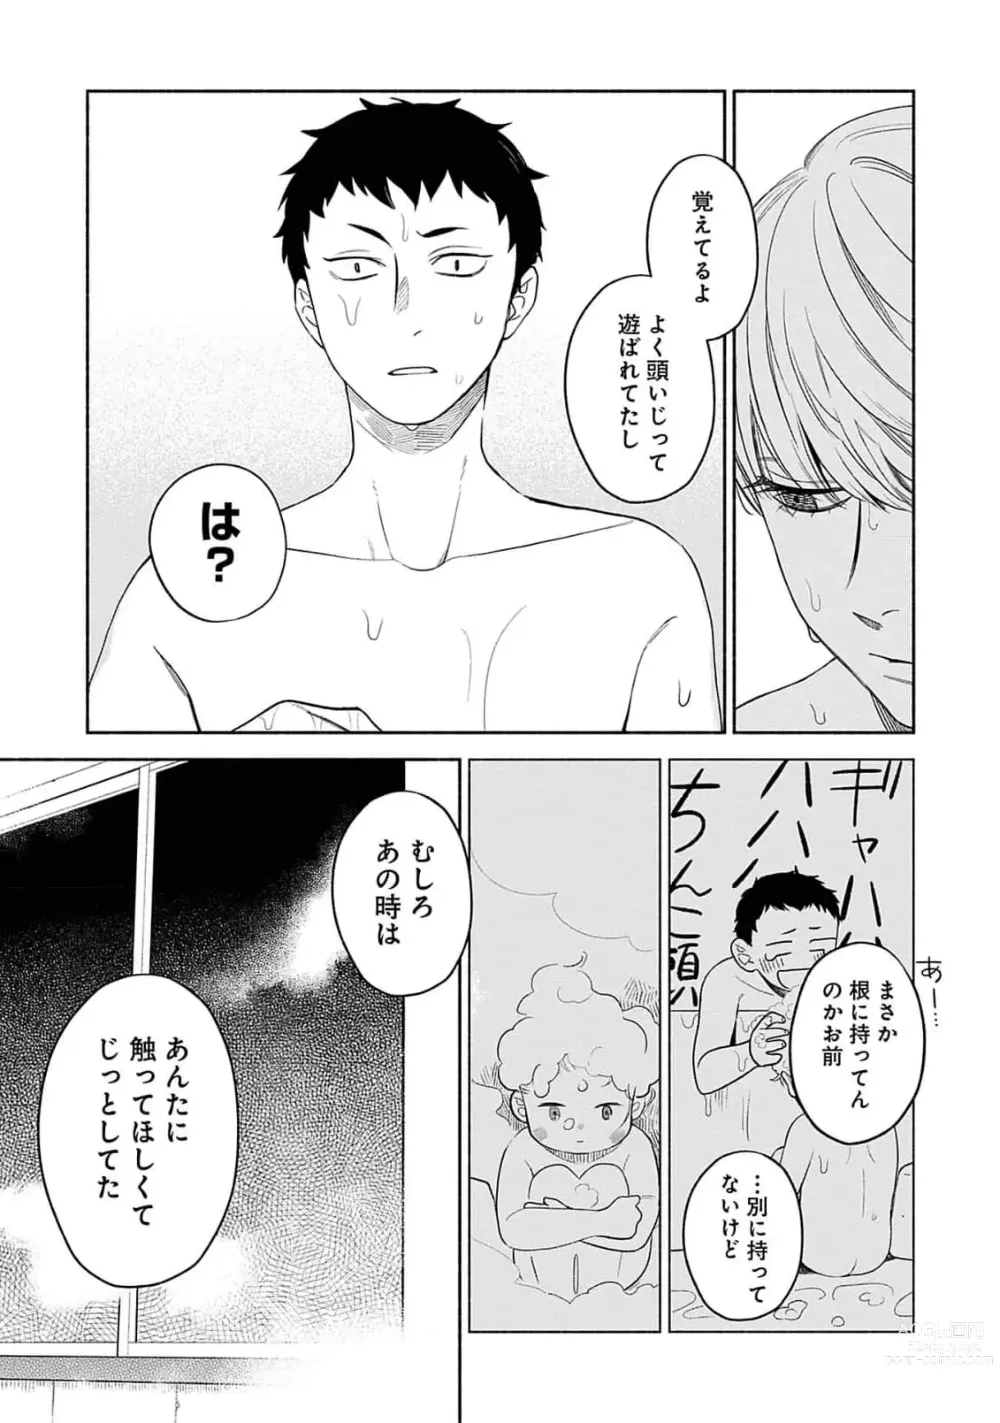 Page 185 of manga Yoru no Kyoudai